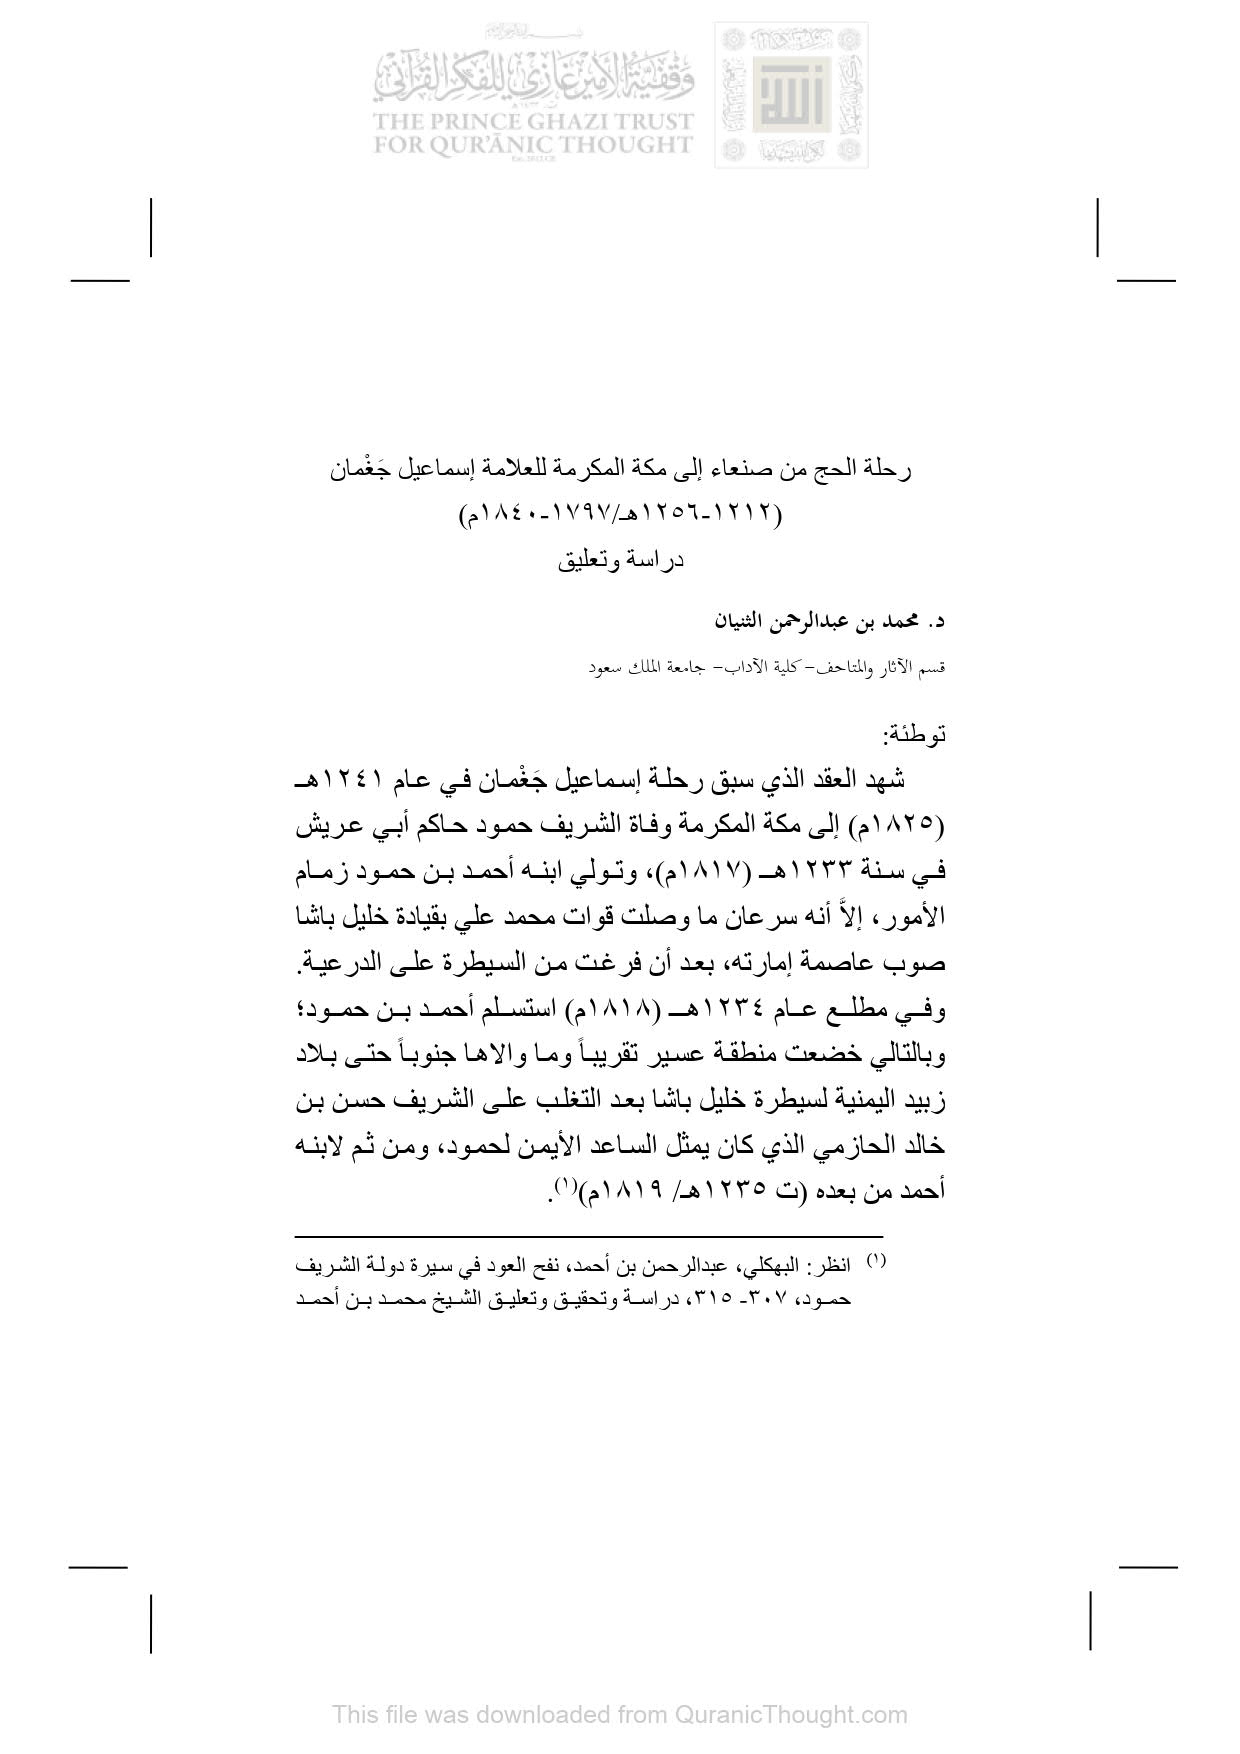 رحلة الحج من صنعاء إلى مكة المكرمة للعلامة إسماعيل جغمان ( 1212 _ 1256هـ / 1797 _ 1840م ) دراسة وتعليق